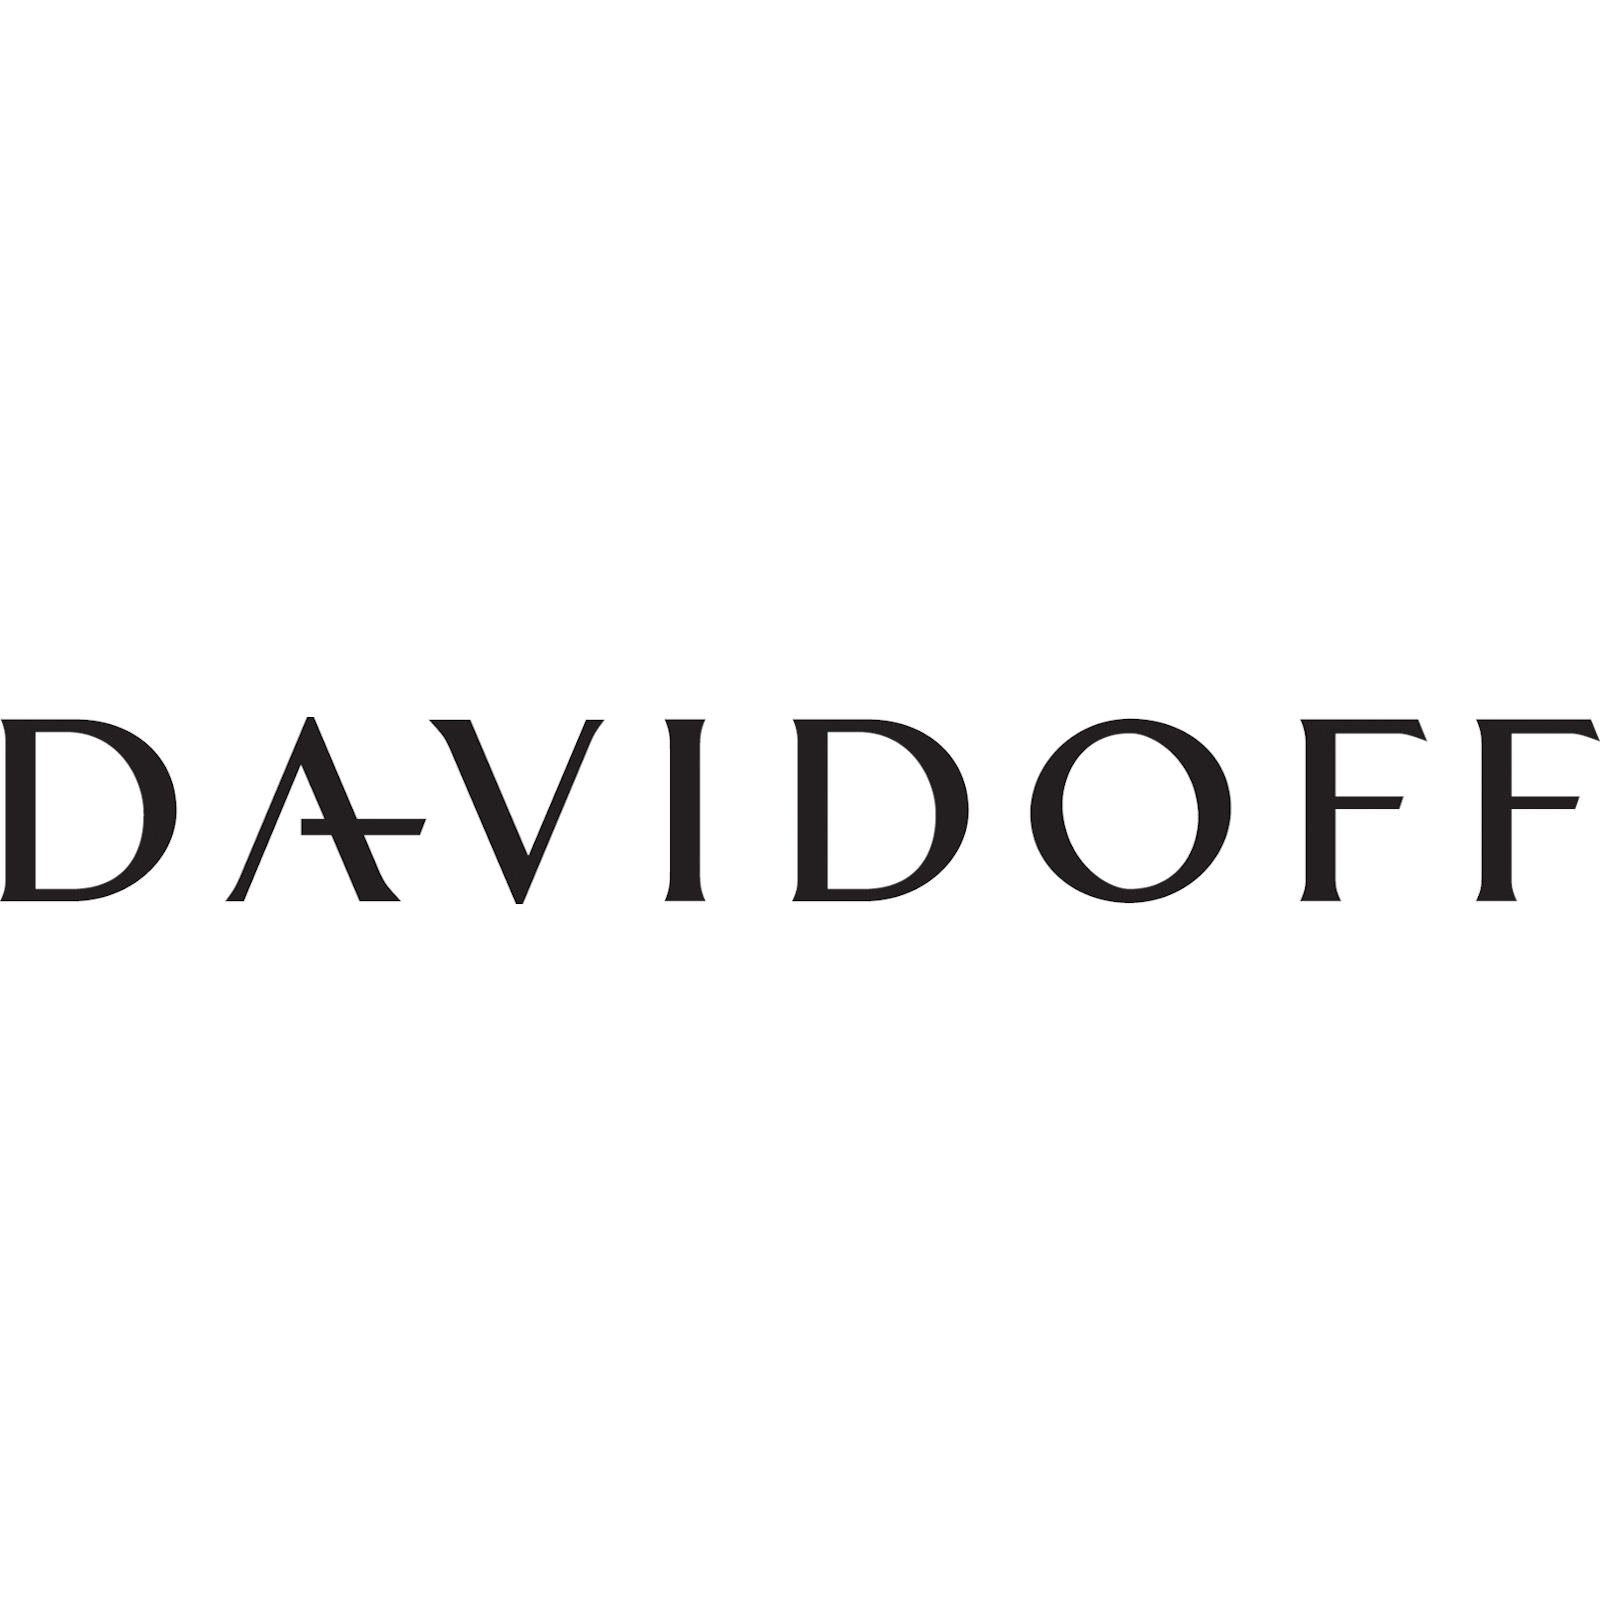 Davidoff DAVIDOFF (kein Chrom 22873, Tintenroller Paris Set) Platiert Kugelschreiber